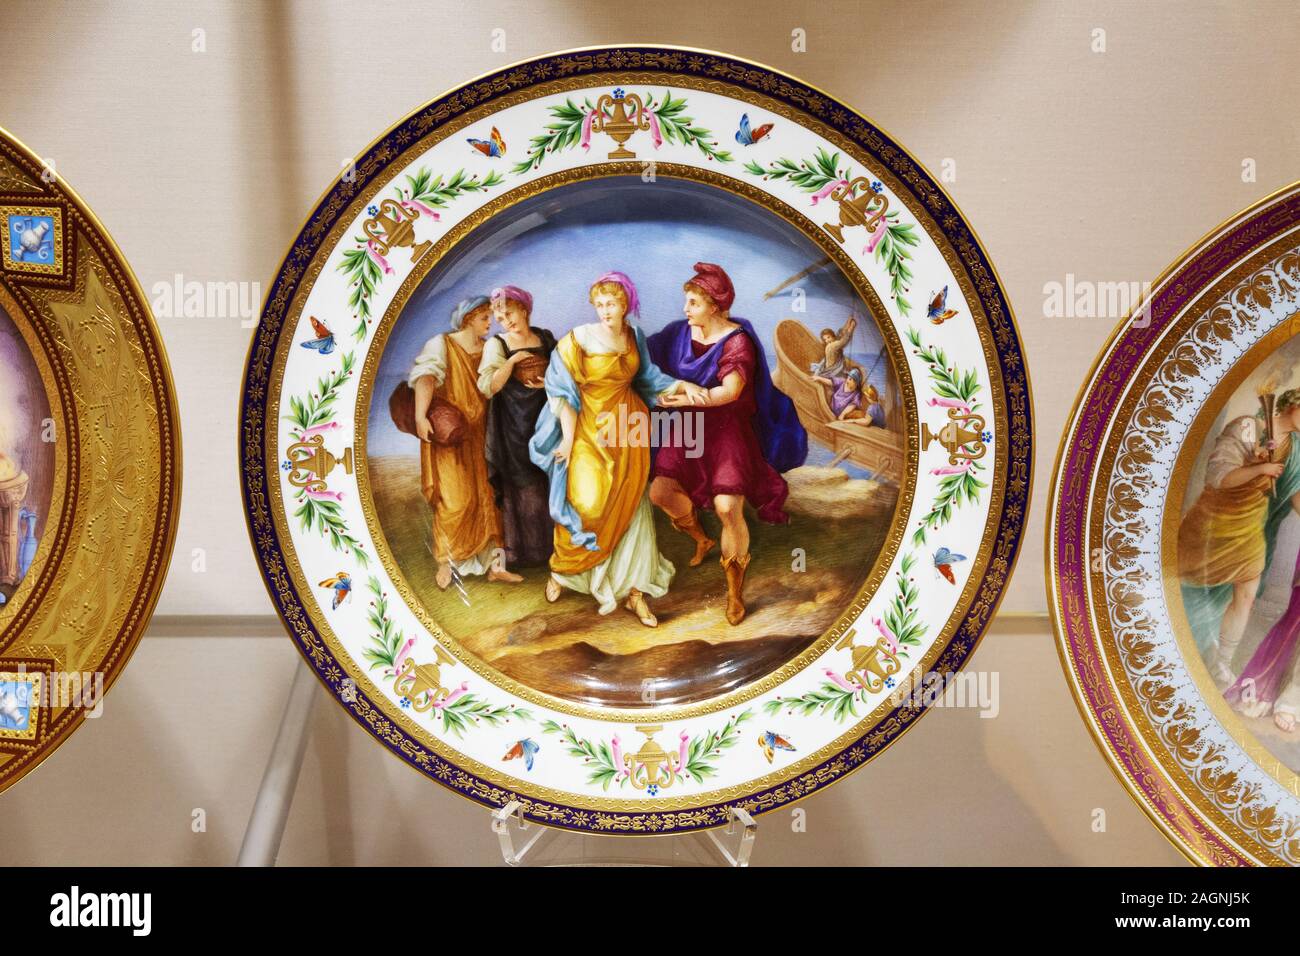 La porcelaine de Vienne est une vaisselle colorée, des plats et des assiettes du début du XIXe siècle (1800-1806), le musée Sisi, le palais Hofburg, Vienne Autriche Europe Banque D'Images